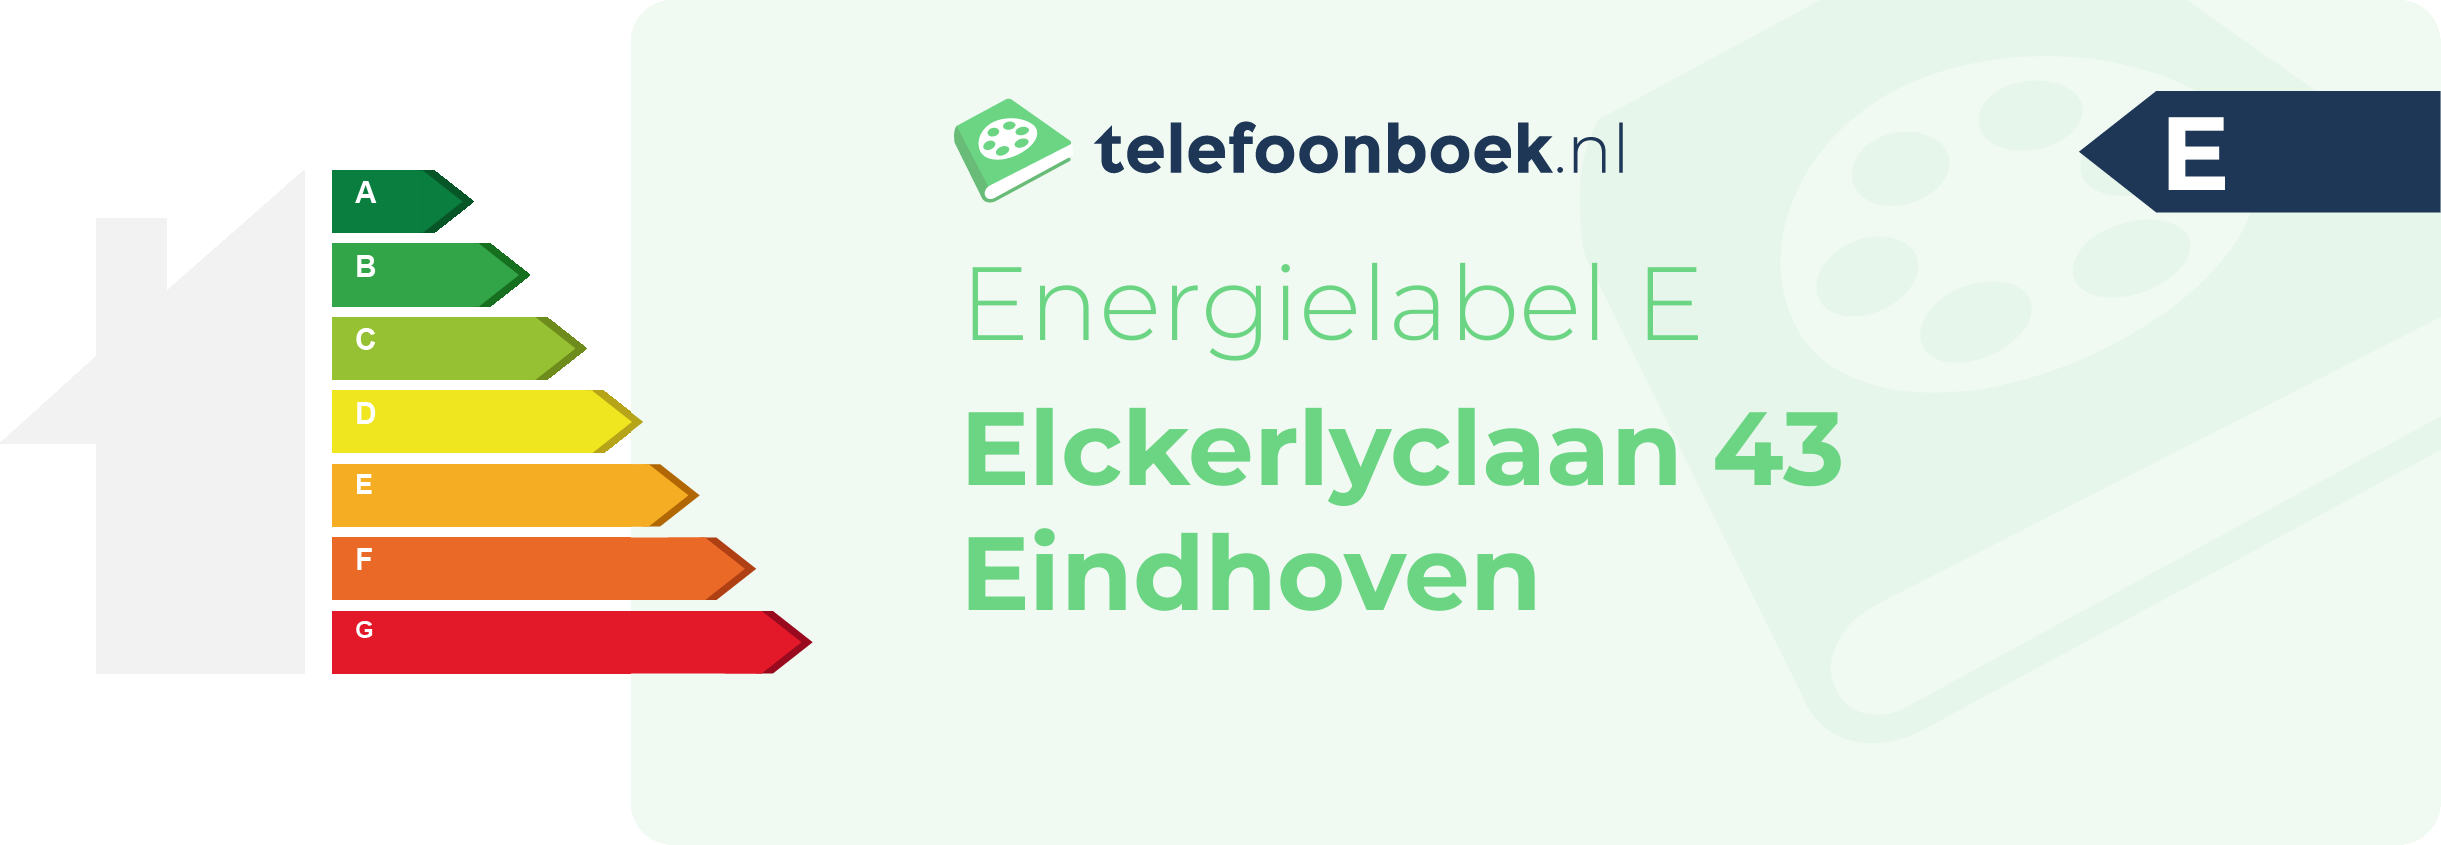 Energielabel Elckerlyclaan 43 Eindhoven